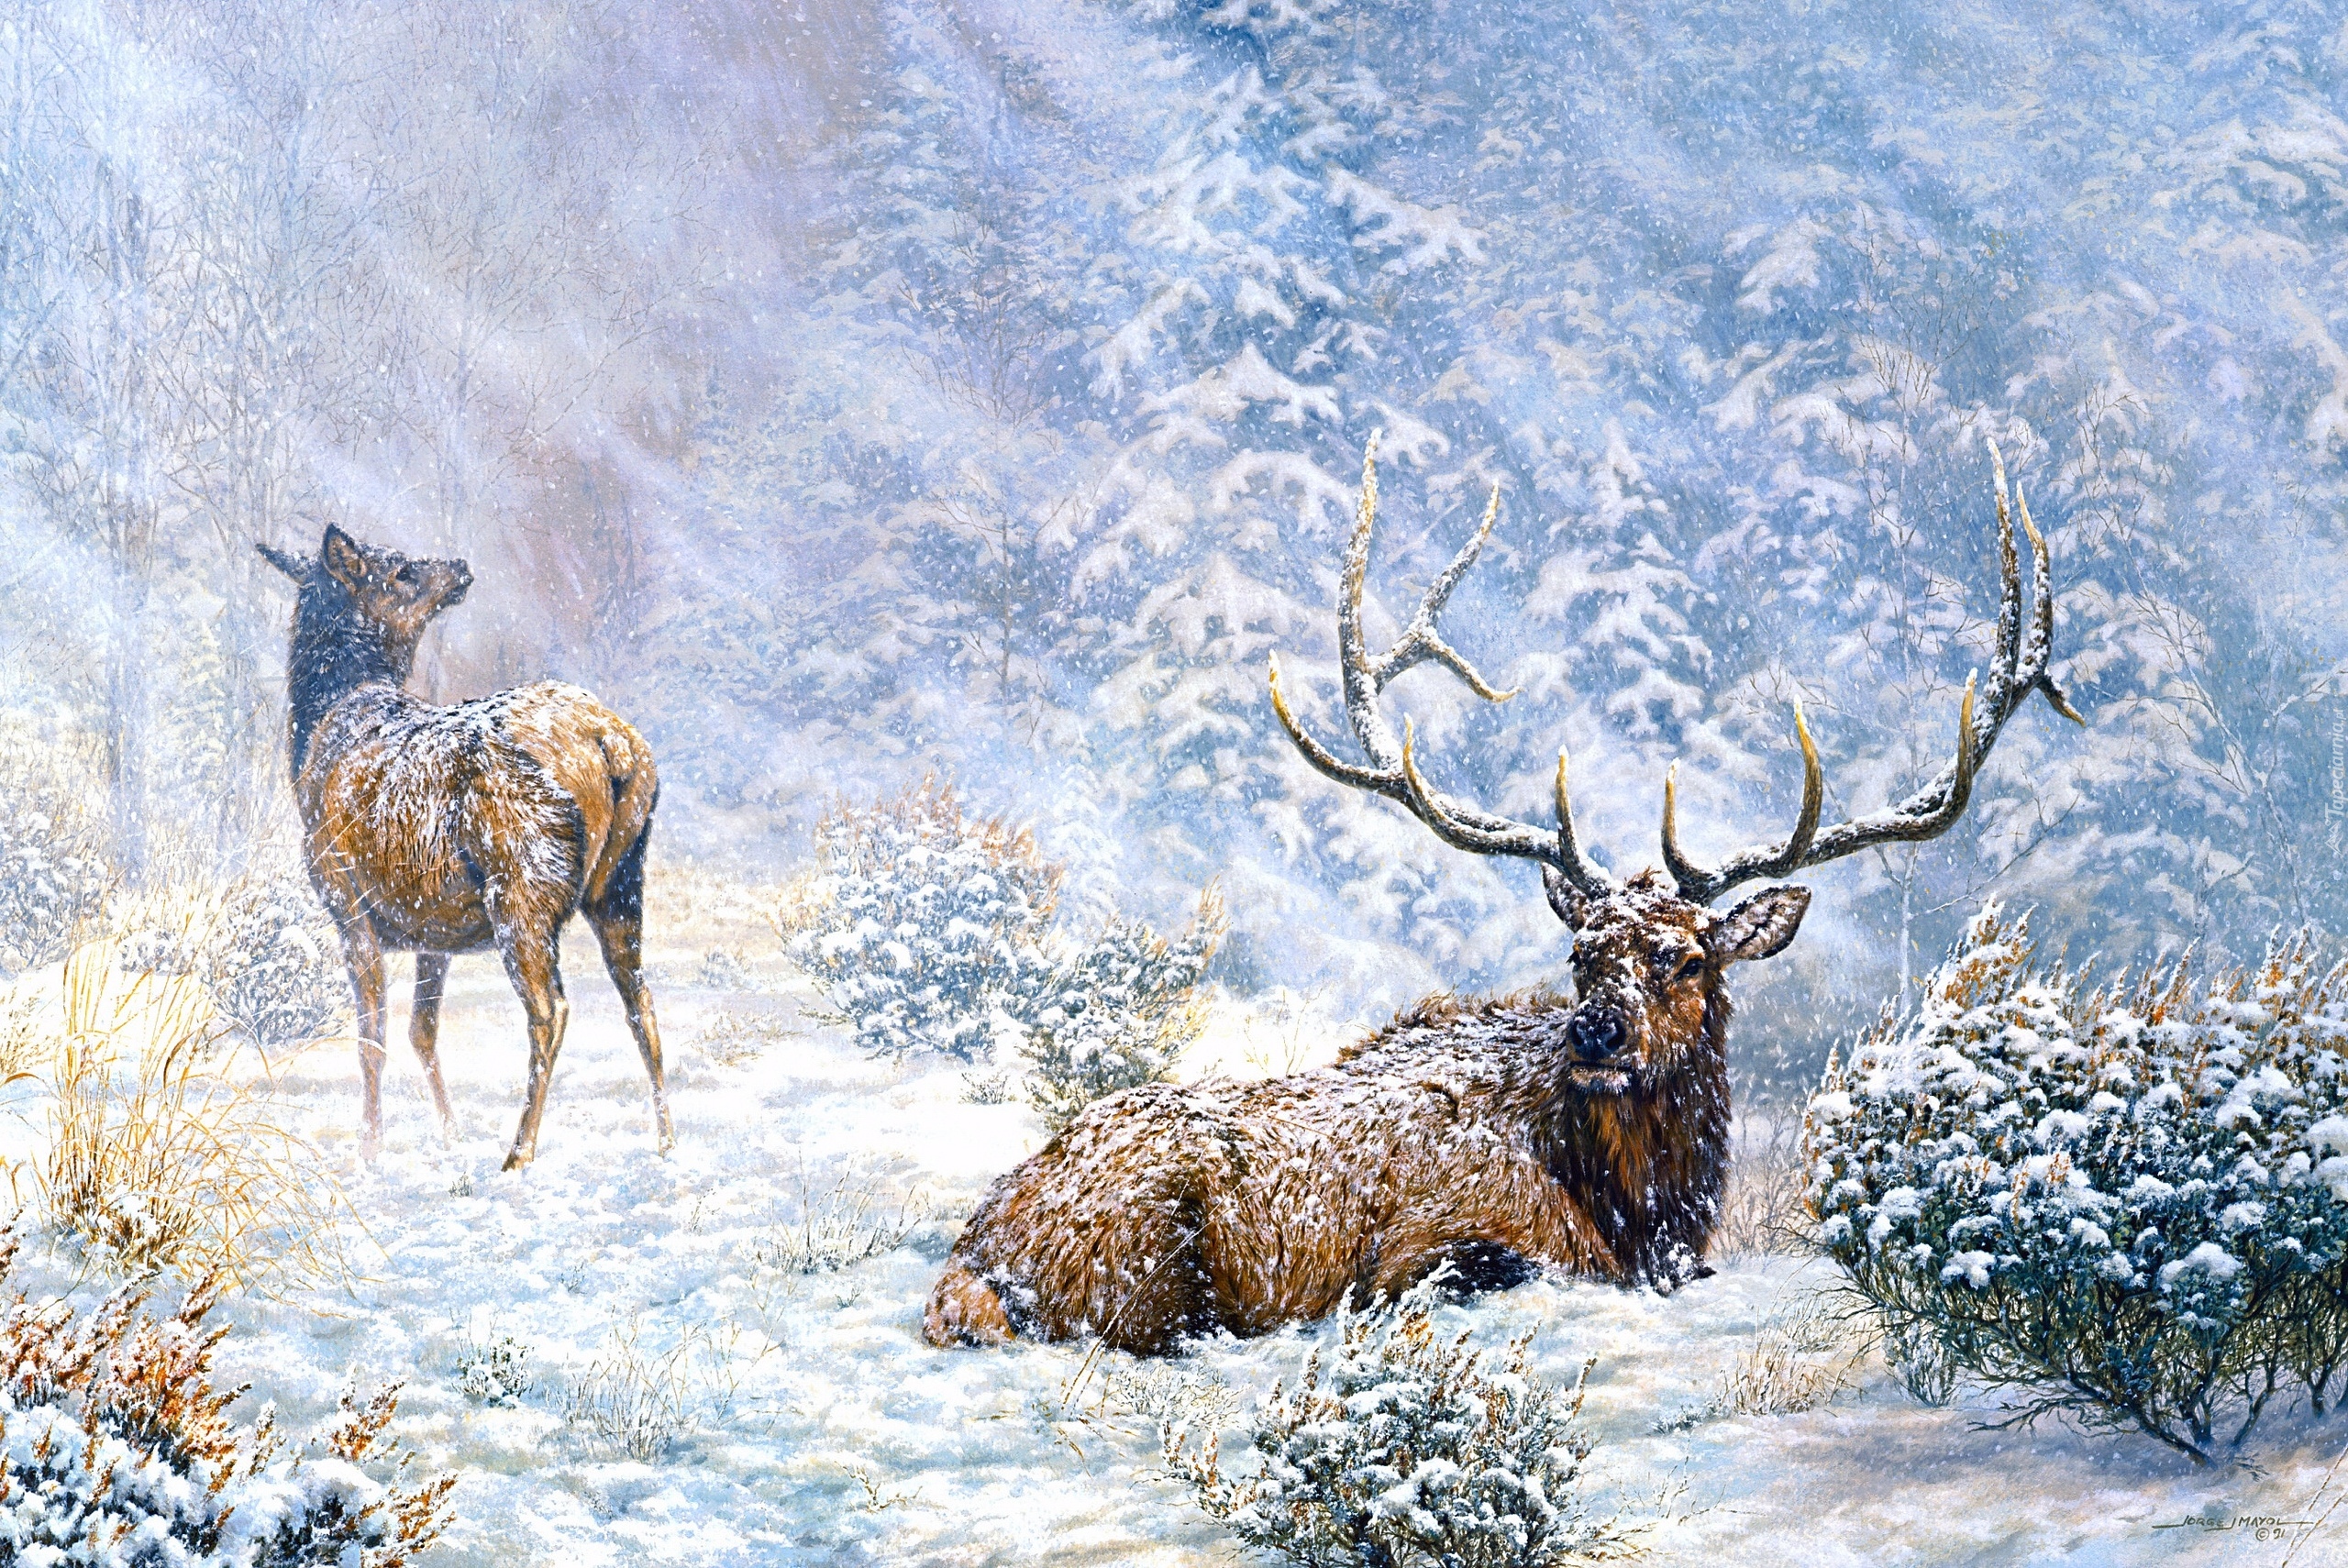 Malarstwo, Obraz, Jorge Mayol, Las, Drzewa, Śnieg, Zima, Jelenie